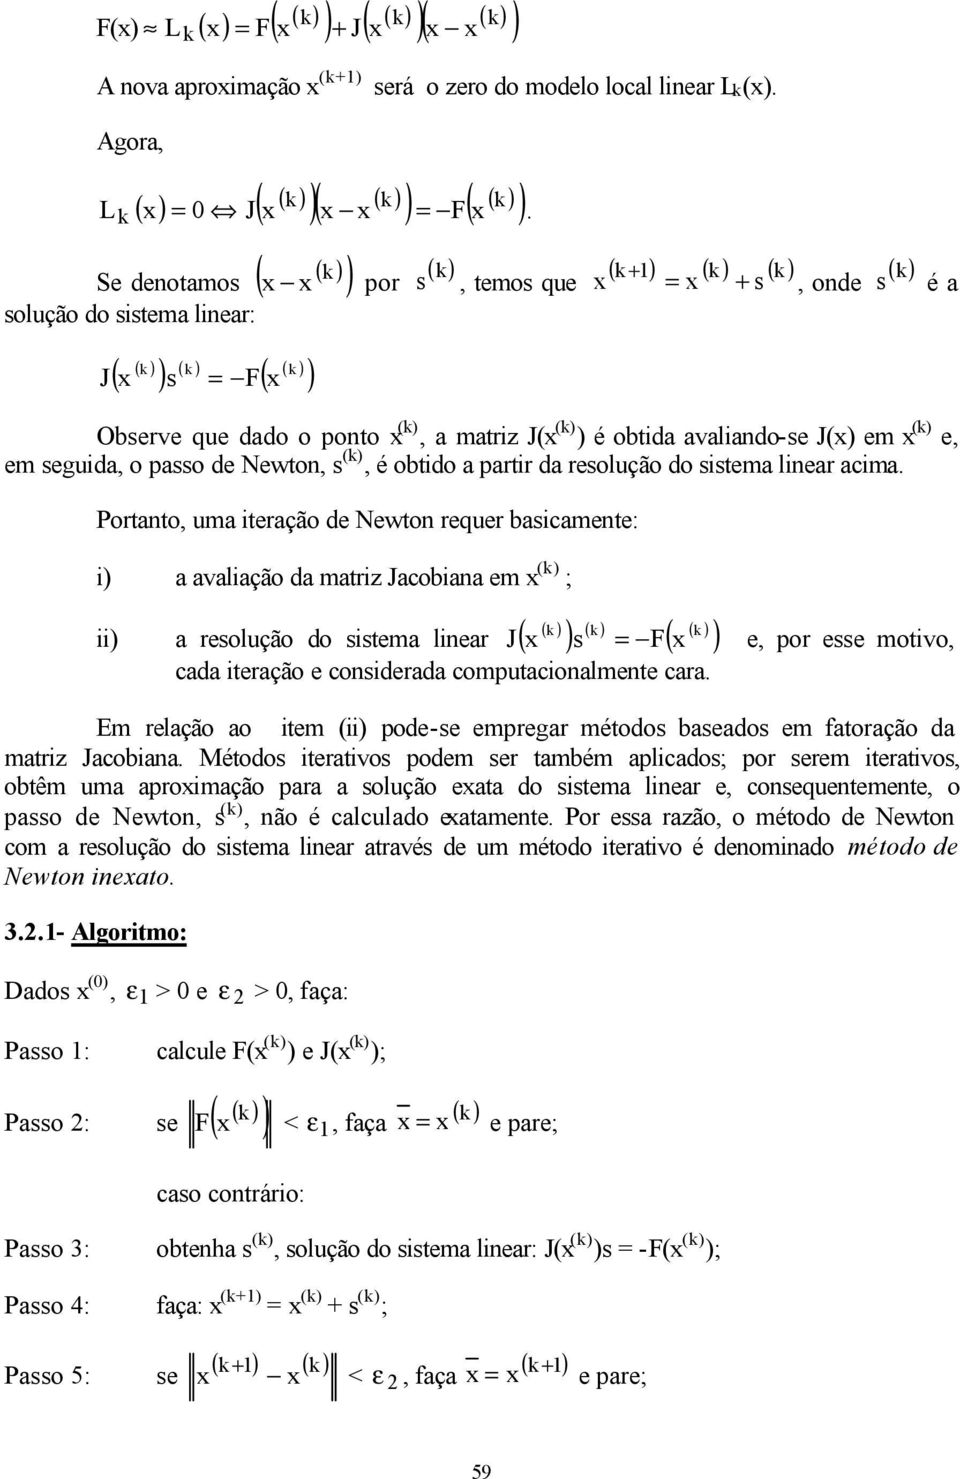 Portato uma iteração de Newto requer basicamete: i a avaliação da matriz Jacobiaa em ( ; ii a resolução do sistema liear J s F e por esse motivo cada iteração e cosiderada computacioalmete cara.